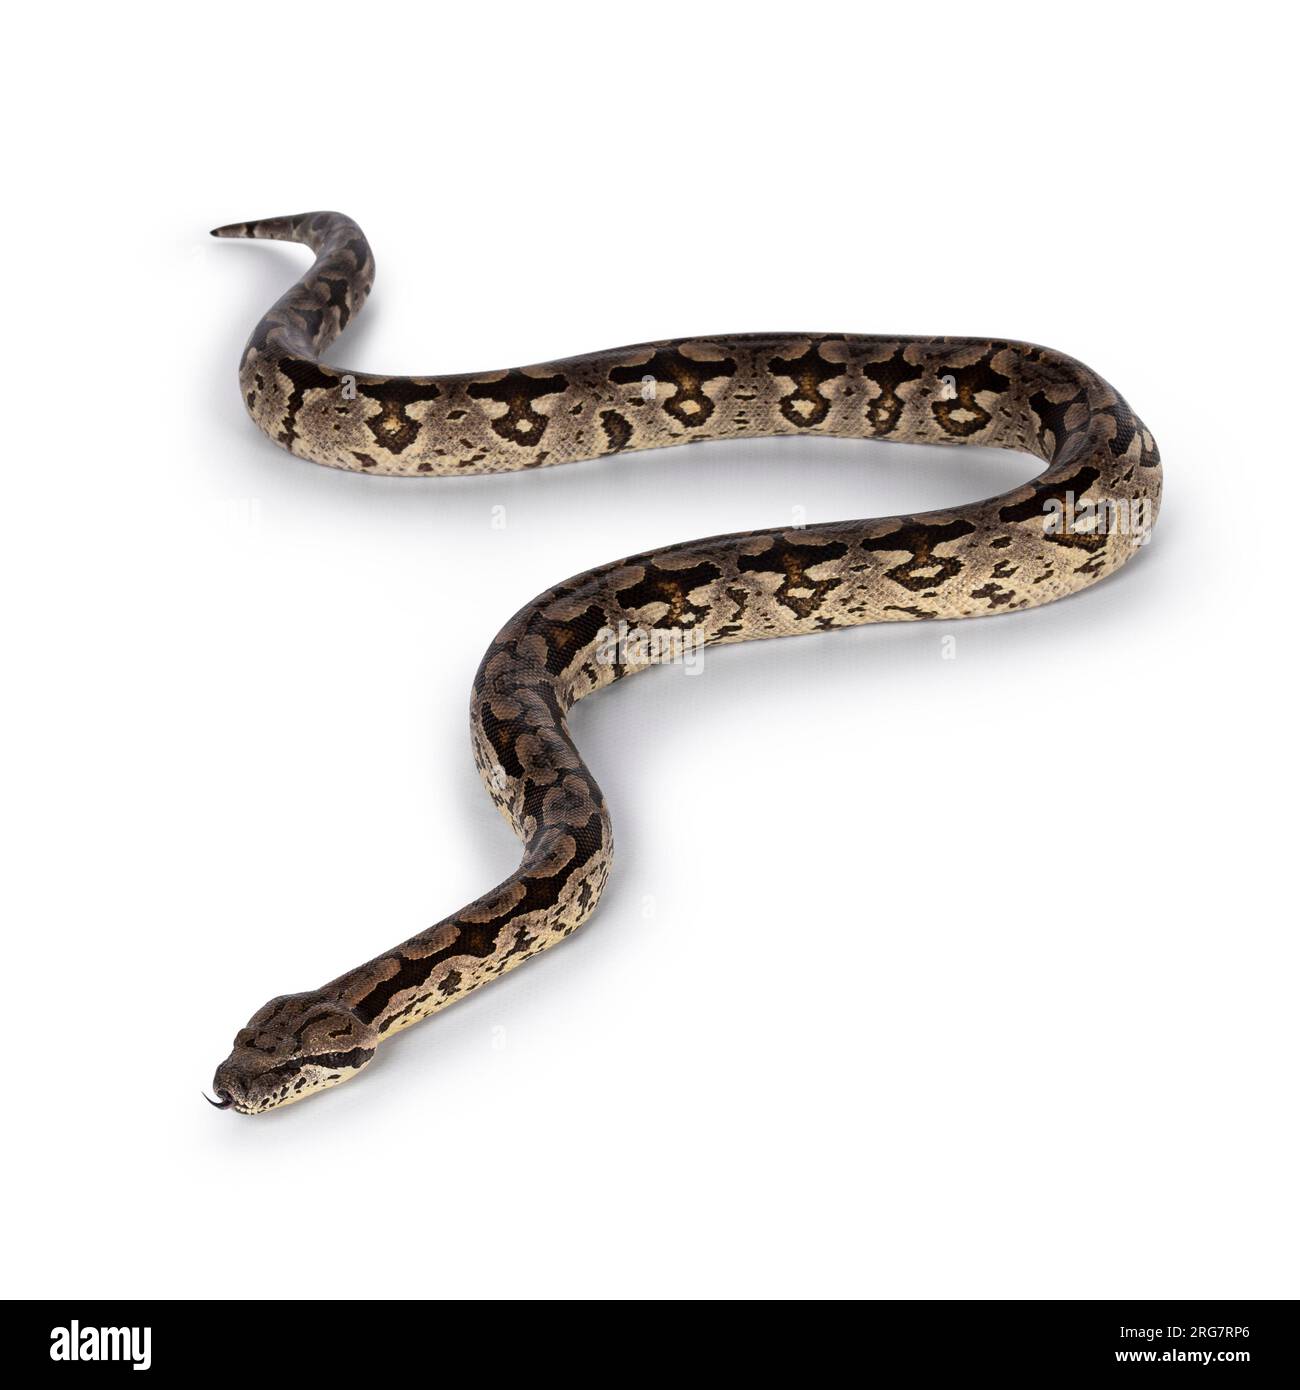 Photo du corps entier d'un serpent Boa en mouvement. Isolé sur fond blanc. Banque D'Images